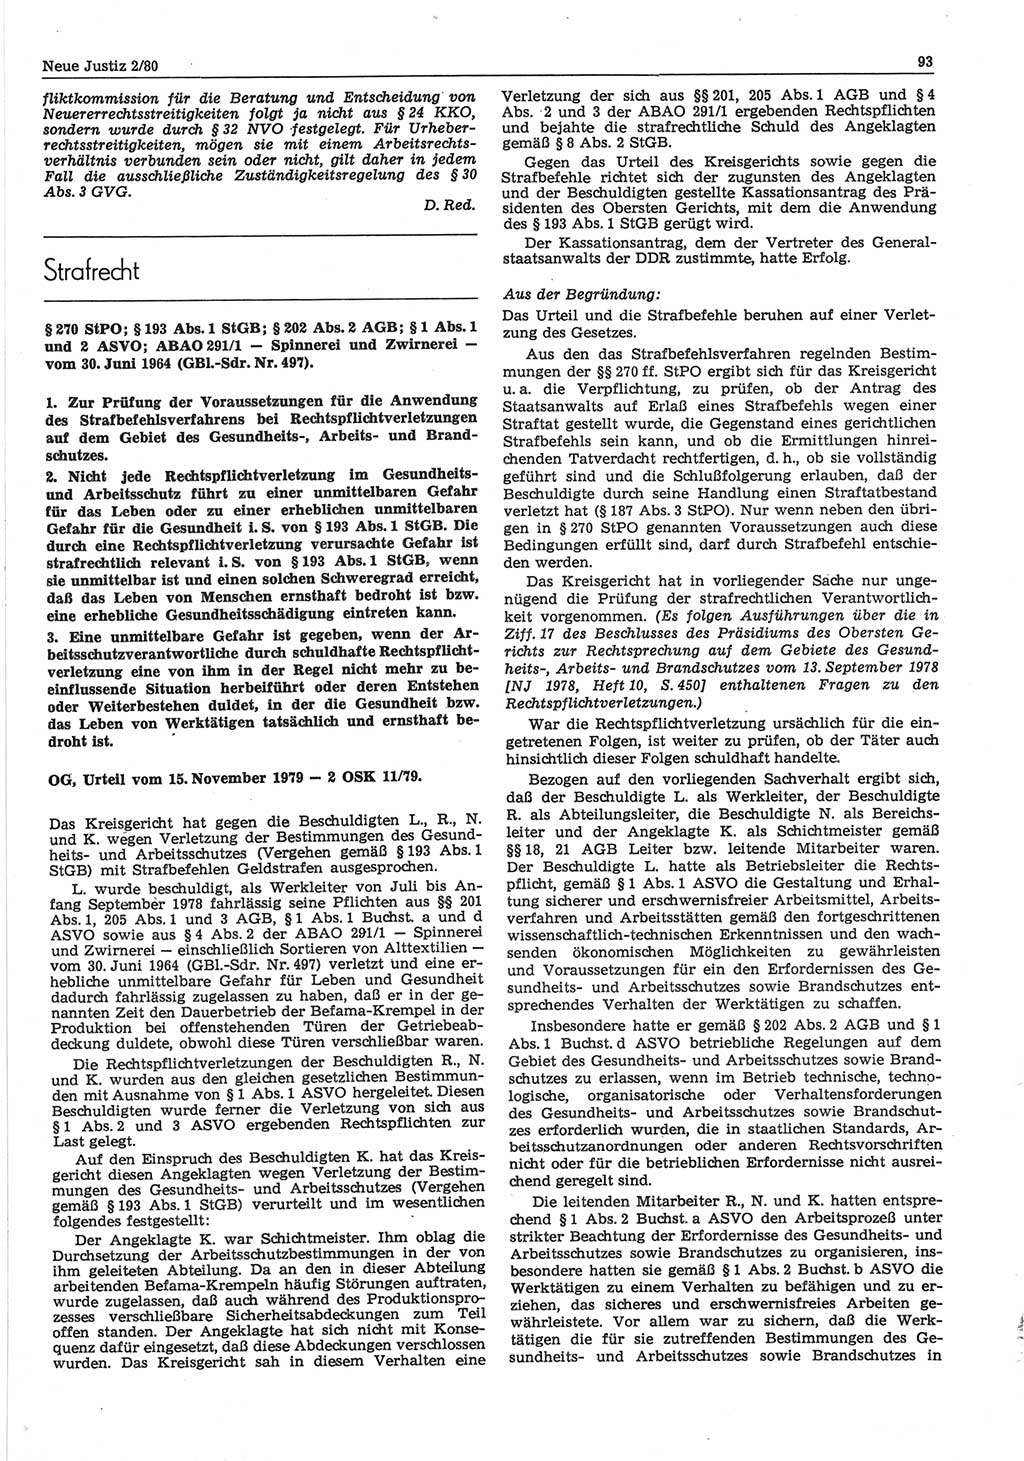 Neue Justiz (NJ), Zeitschrift für sozialistisches Recht und Gesetzlichkeit [Deutsche Demokratische Republik (DDR)], 34. Jahrgang 1980, Seite 93 (NJ DDR 1980, S. 93)